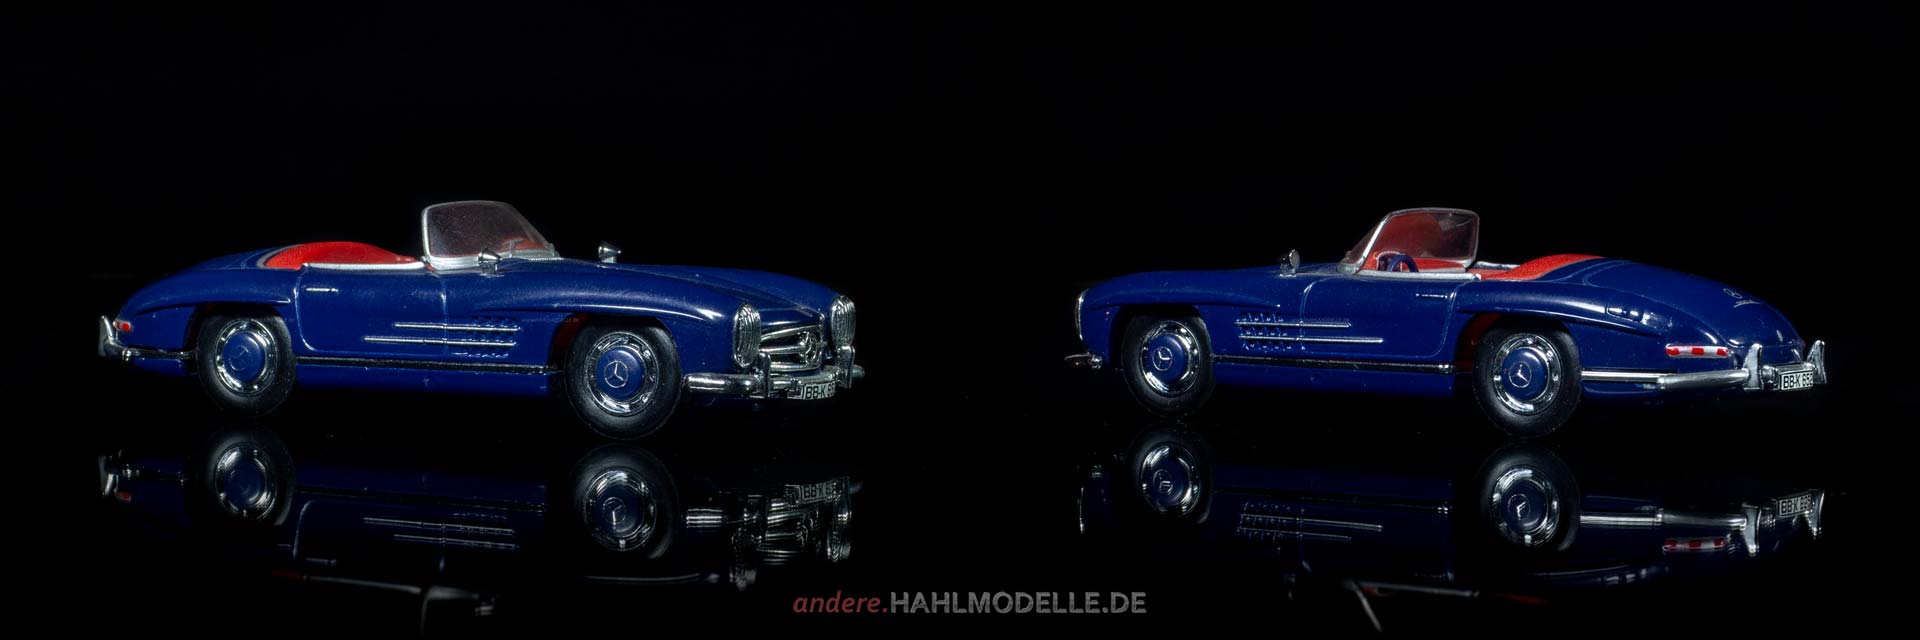 Mercedes-Benz 300 SL (W 198 II) | Roadster | Lesney Products & Co. Ltd. | www.andere.hahlmodelle.de